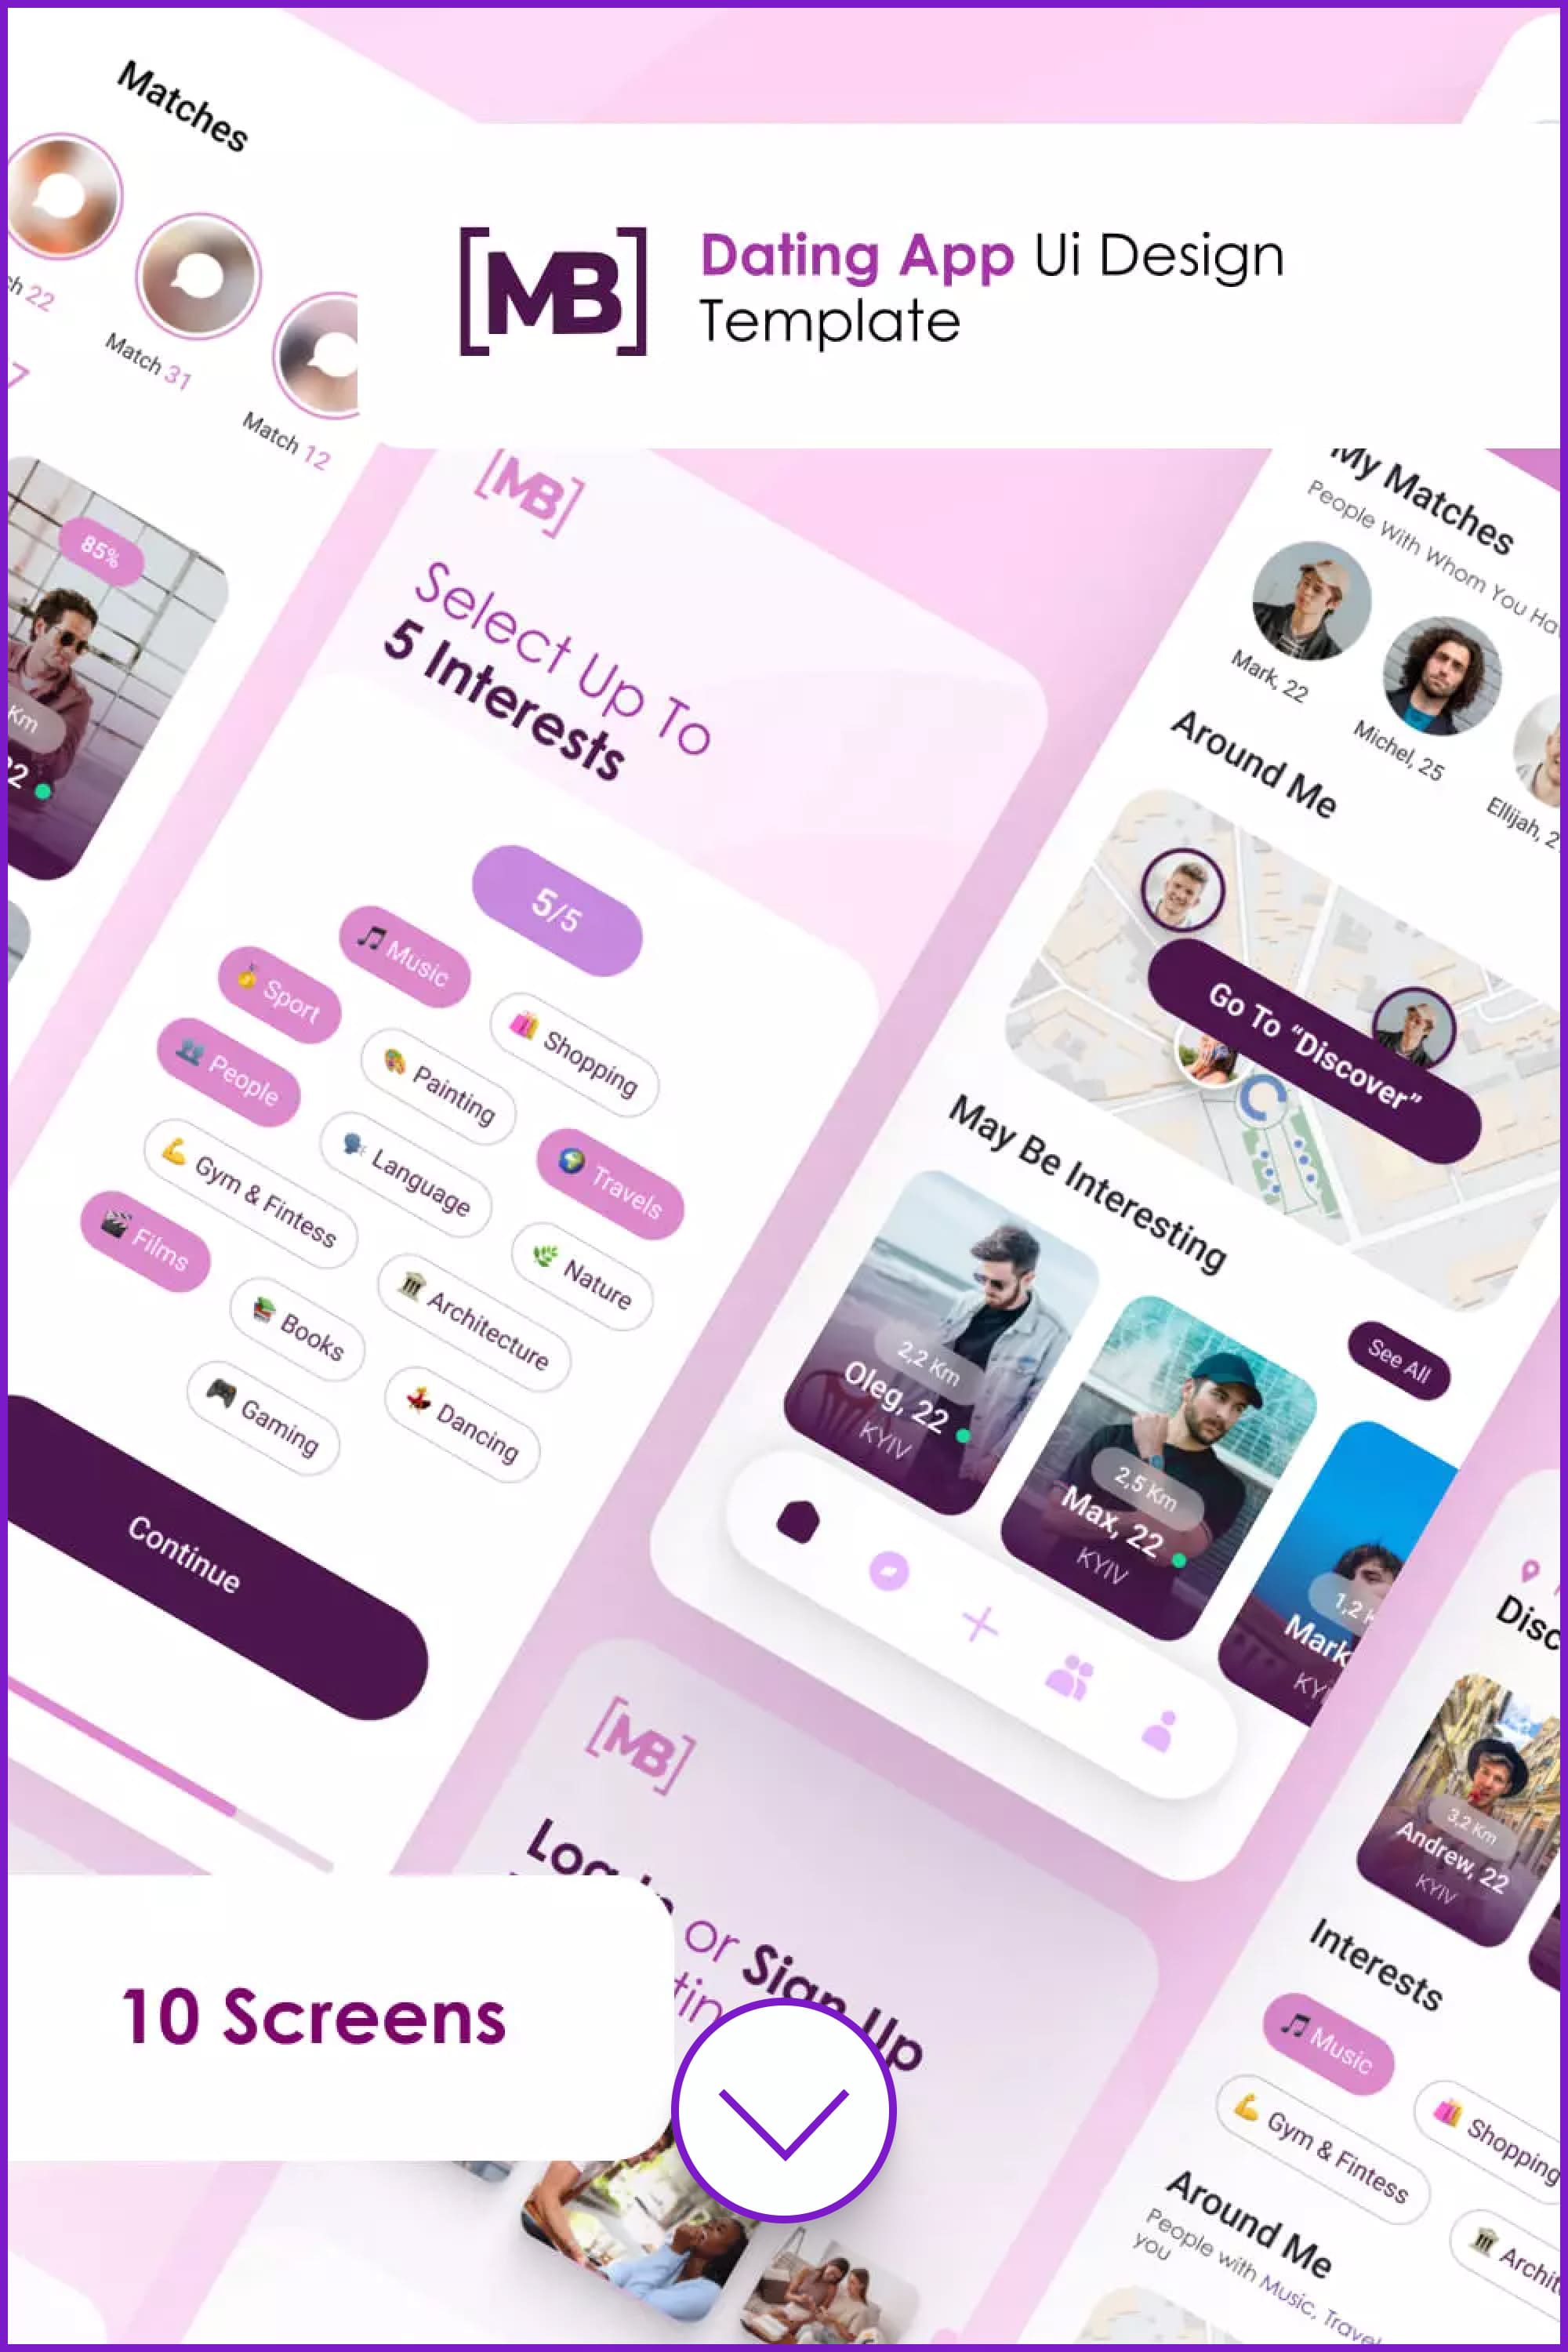 App screens in pink & purple colors.